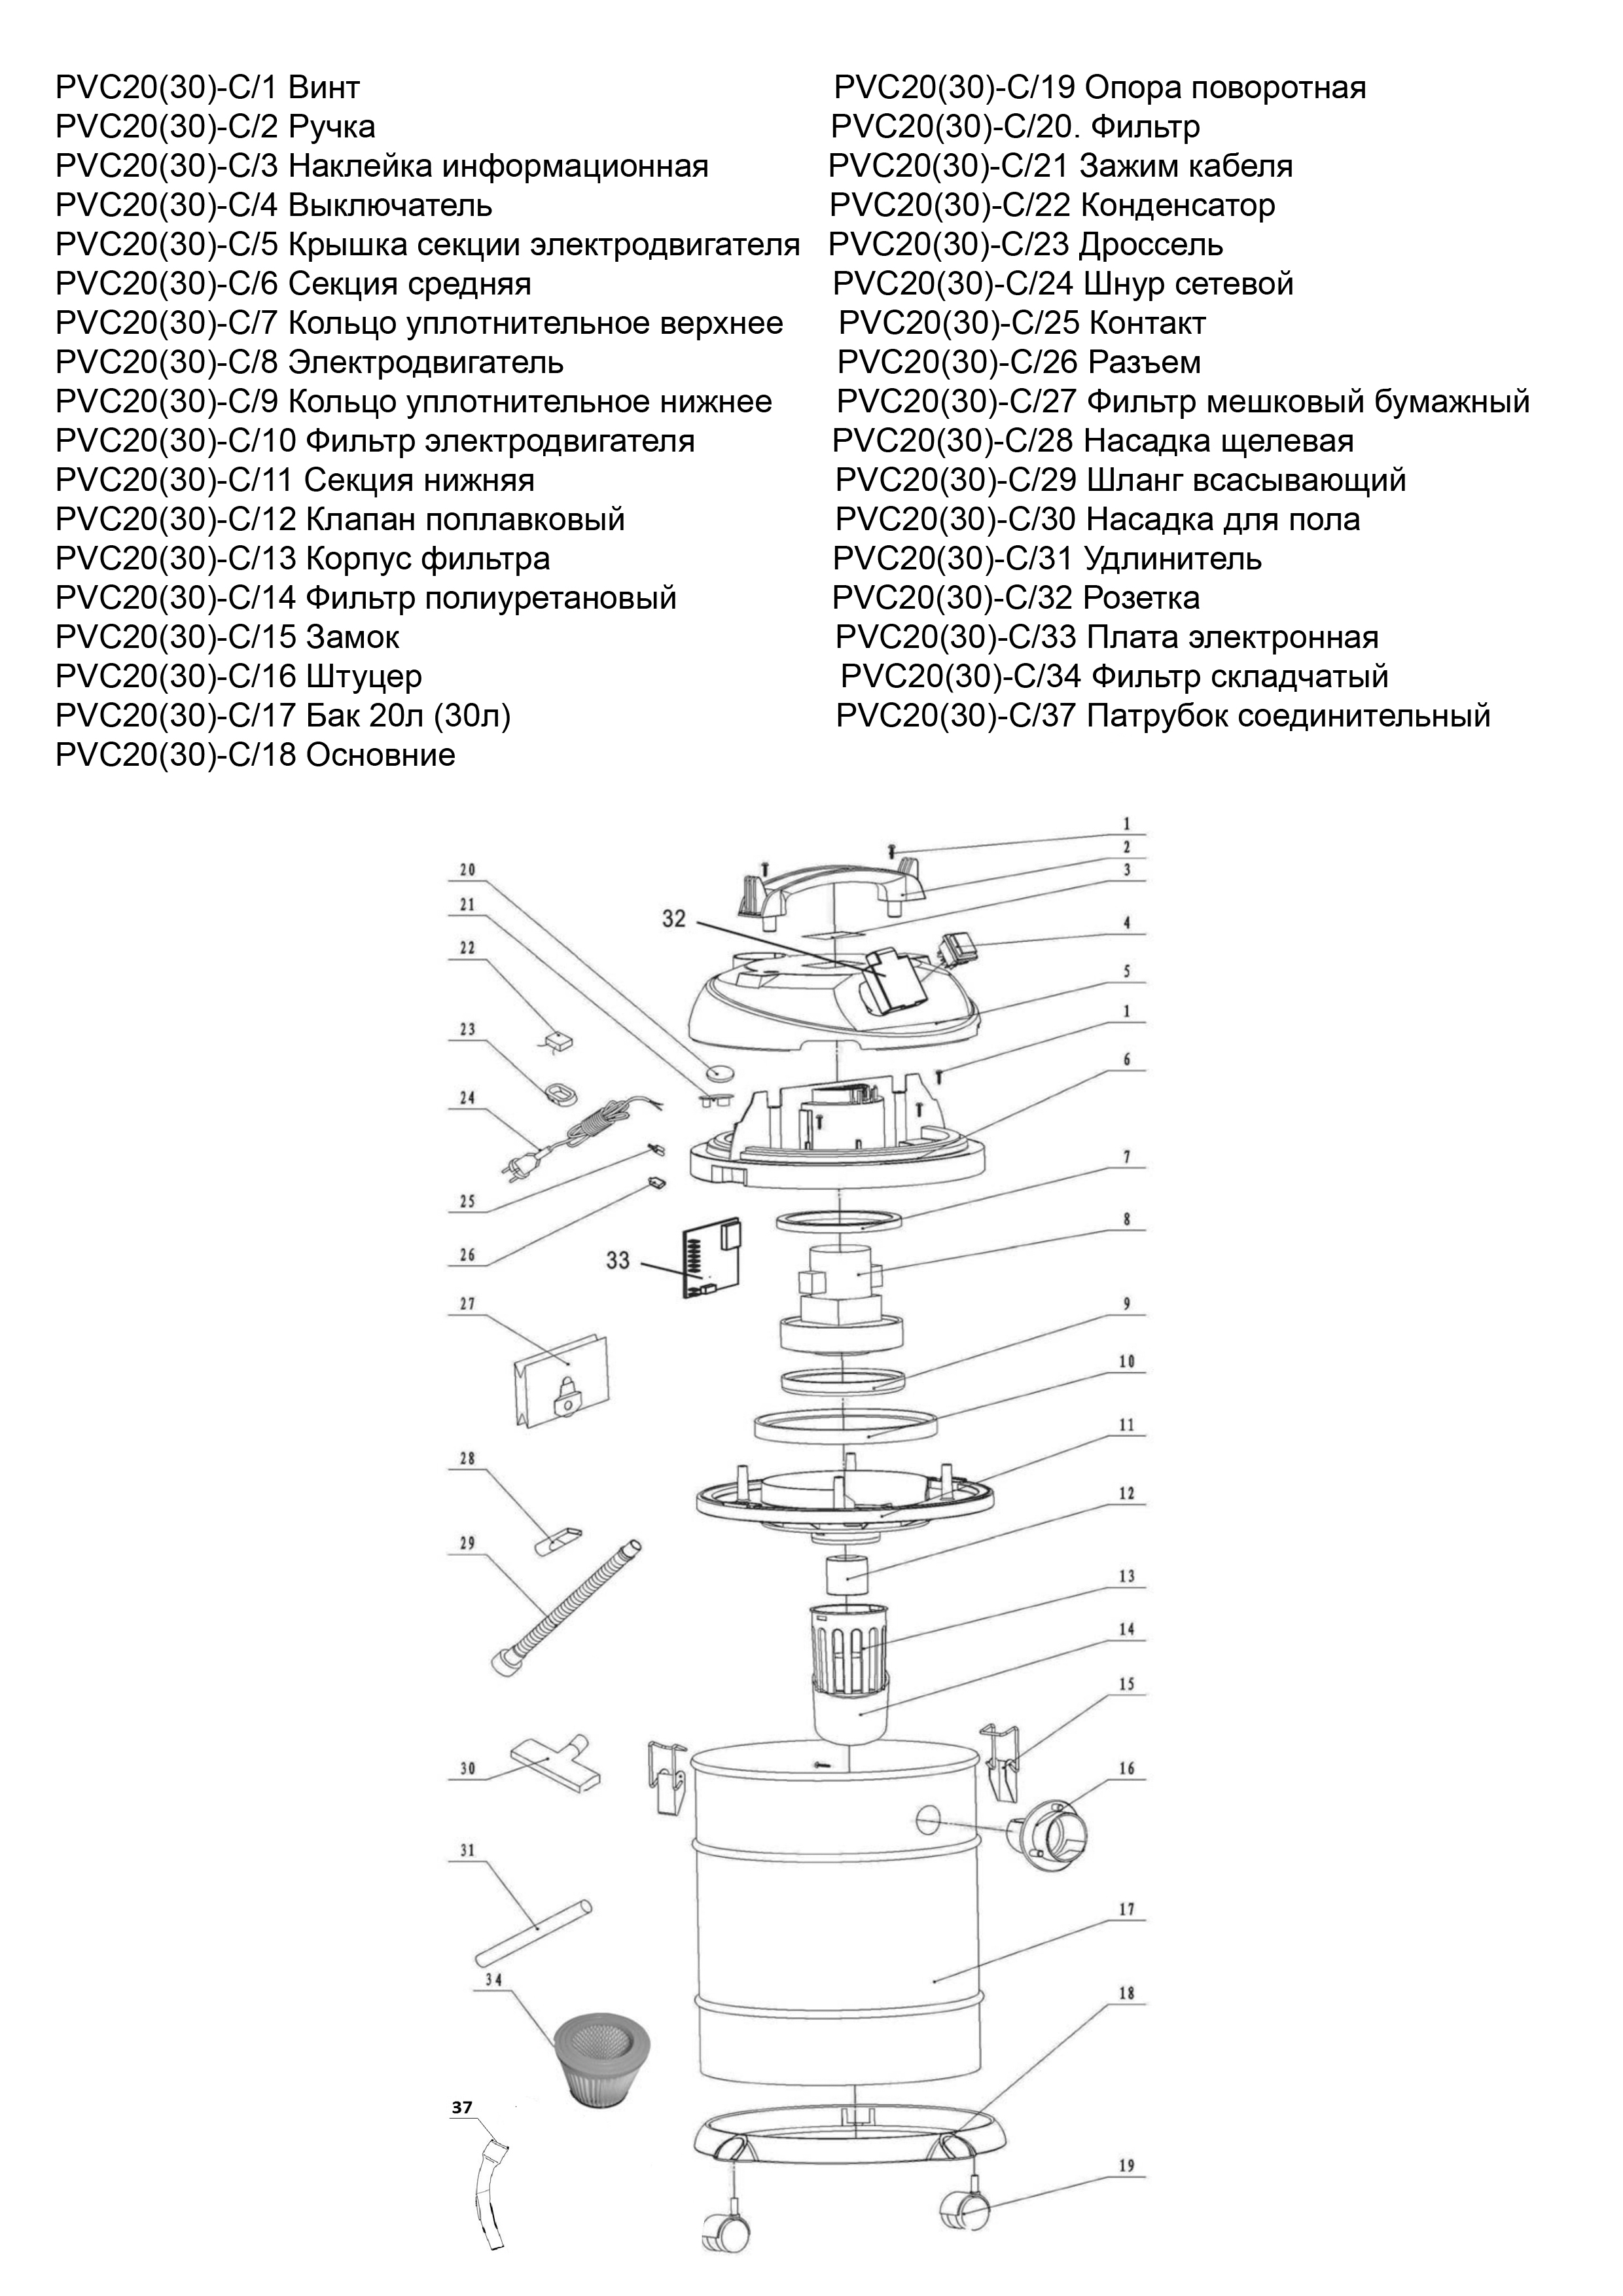 Запчасти, схема и деталировка P.I.T. PVC 30-C МАСТЕР